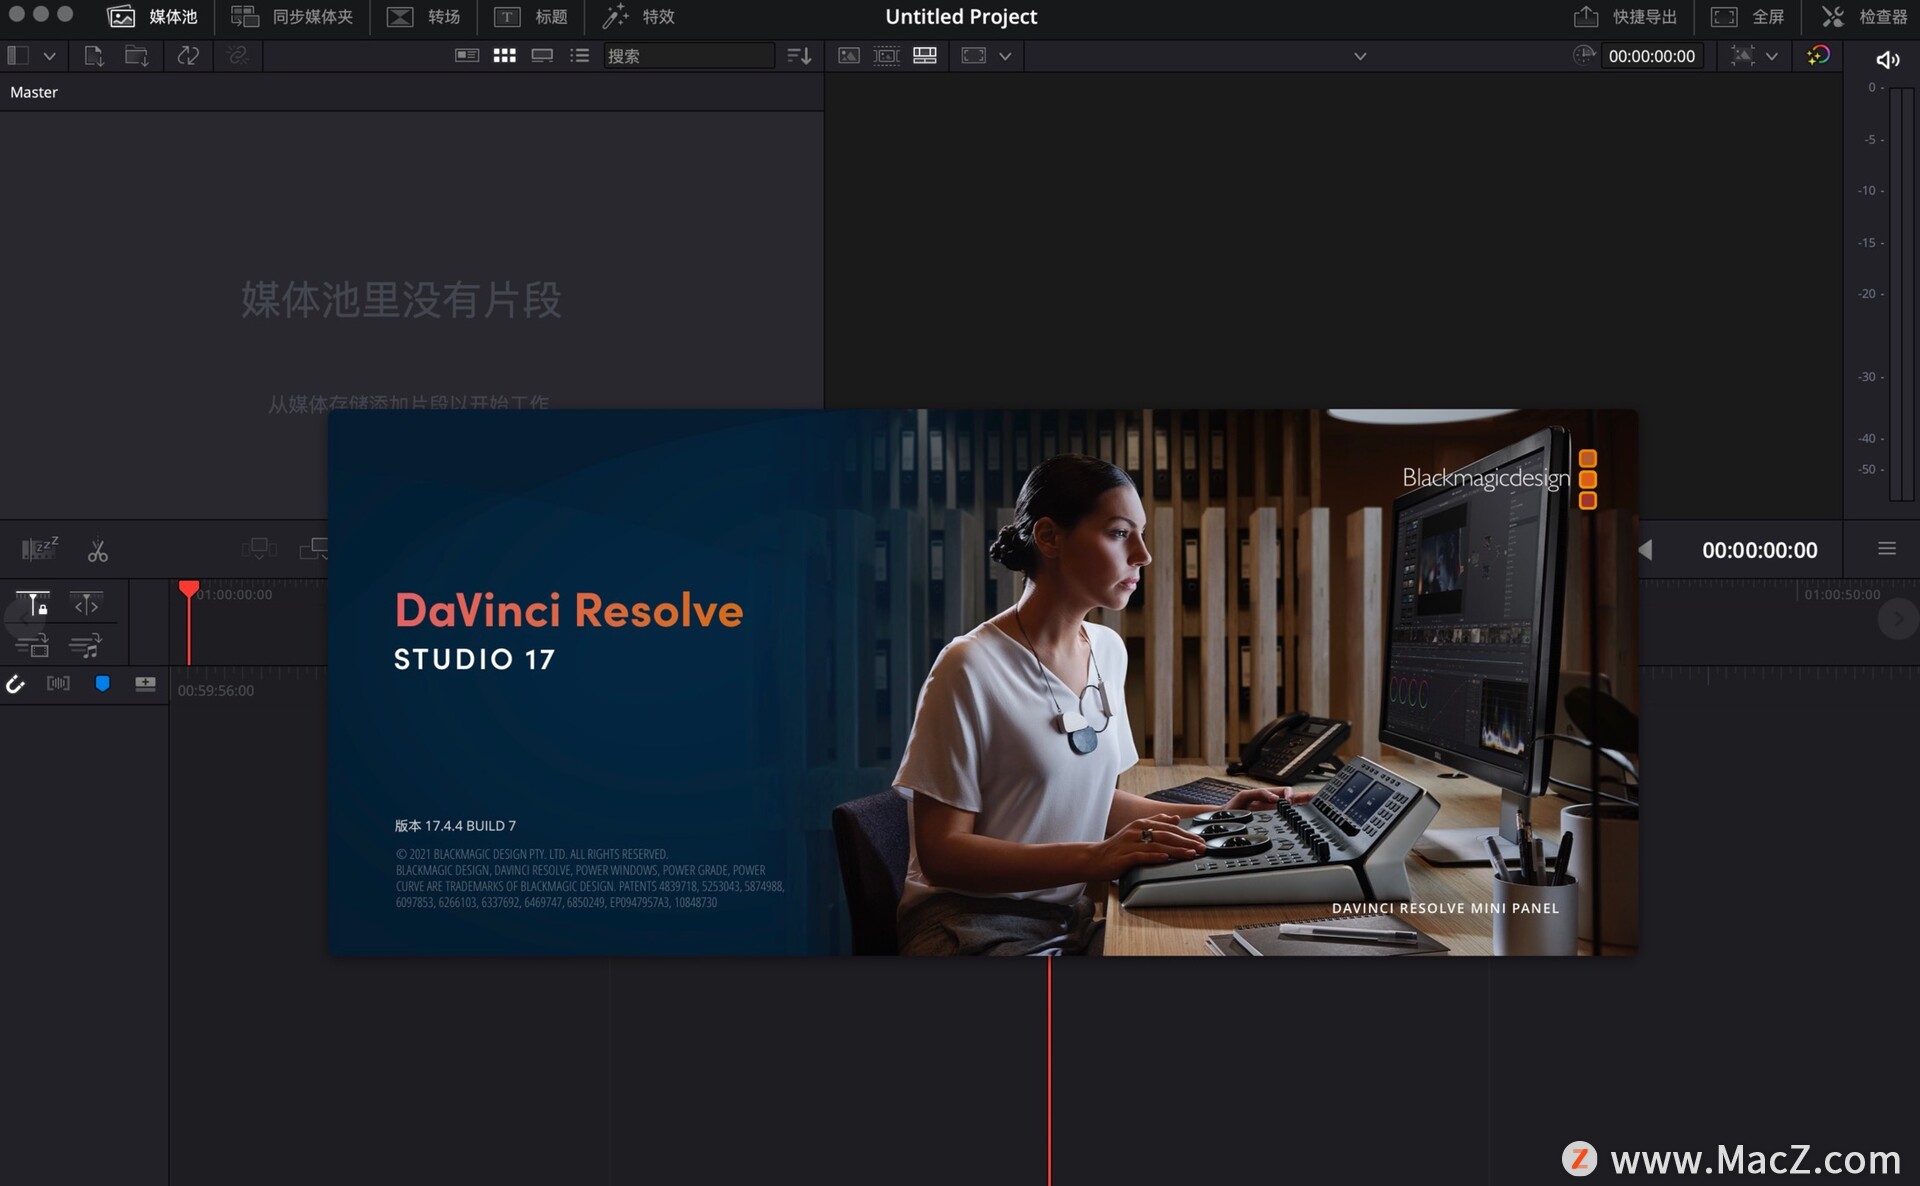 DaVinci Resolve Studio 17 for mac (DaVinci Resolve